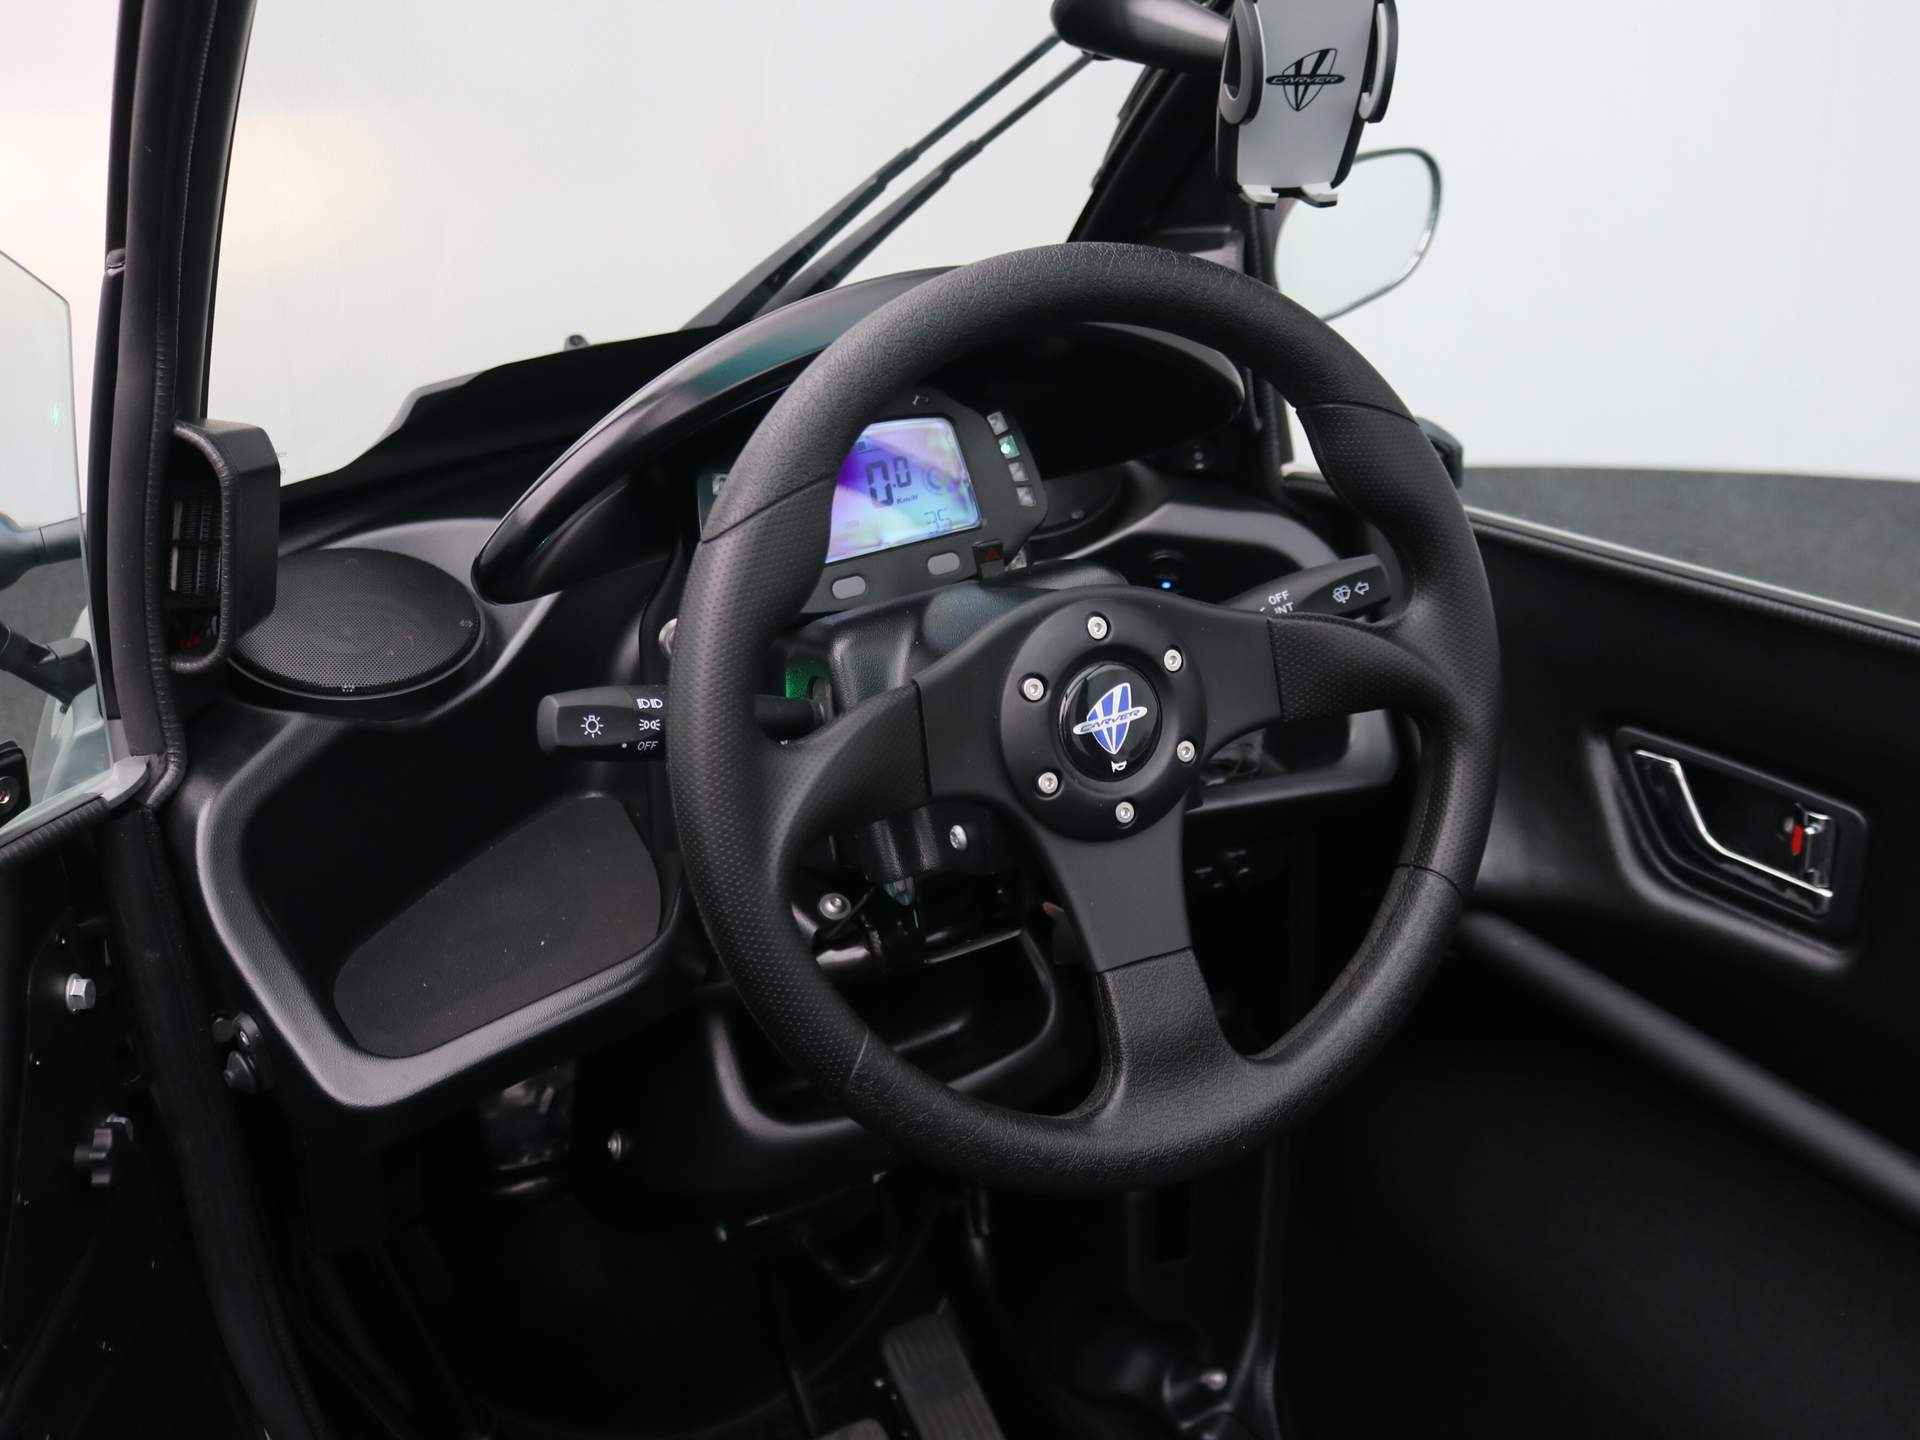 Carver R+ Brommobiel | Voorruit verwarming | Bluetooth Audio | Cabrio dak | Dynamic Driving Modes | Telefoonhouder | USB | Geen wegenbelasting | 130KM Actieradius | Binnen 3 uur opgeladen! - 7/27